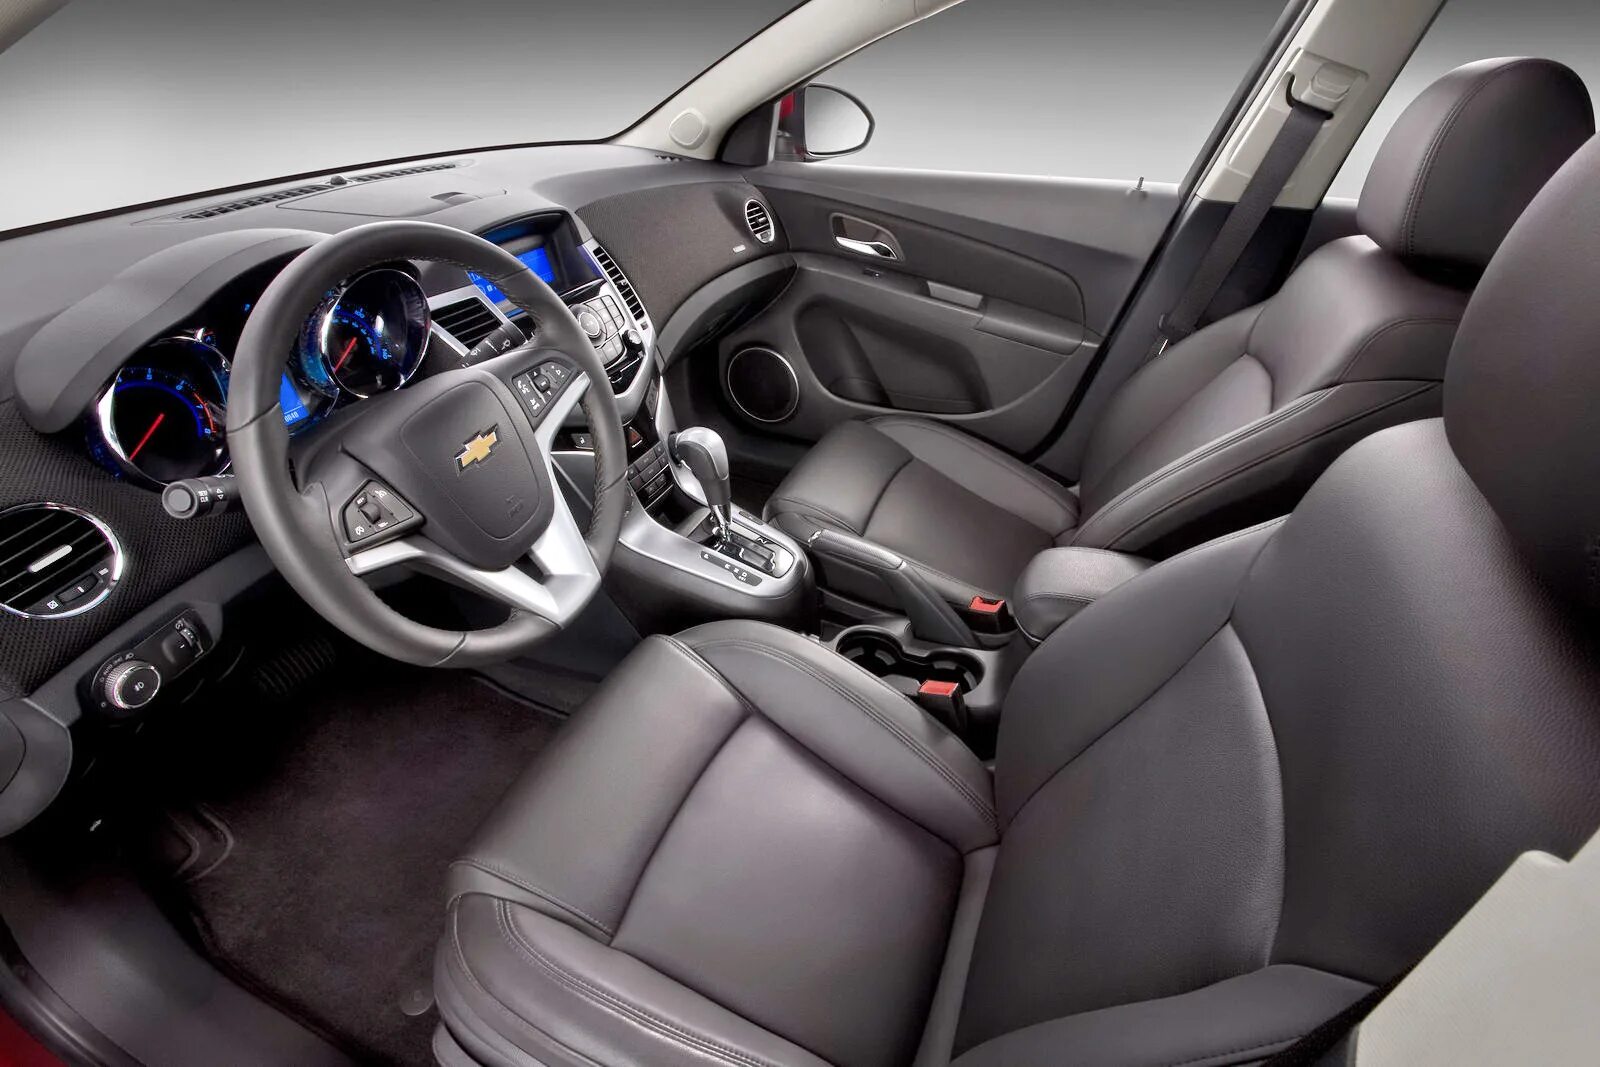 Шевроле хэтчбек салон. Chevrolet Cruze Interior. Шевроле Круз 2014 седан салон. Chevrolet Cruze RS 2011-. Chevrolet Cruze 2014 салон.